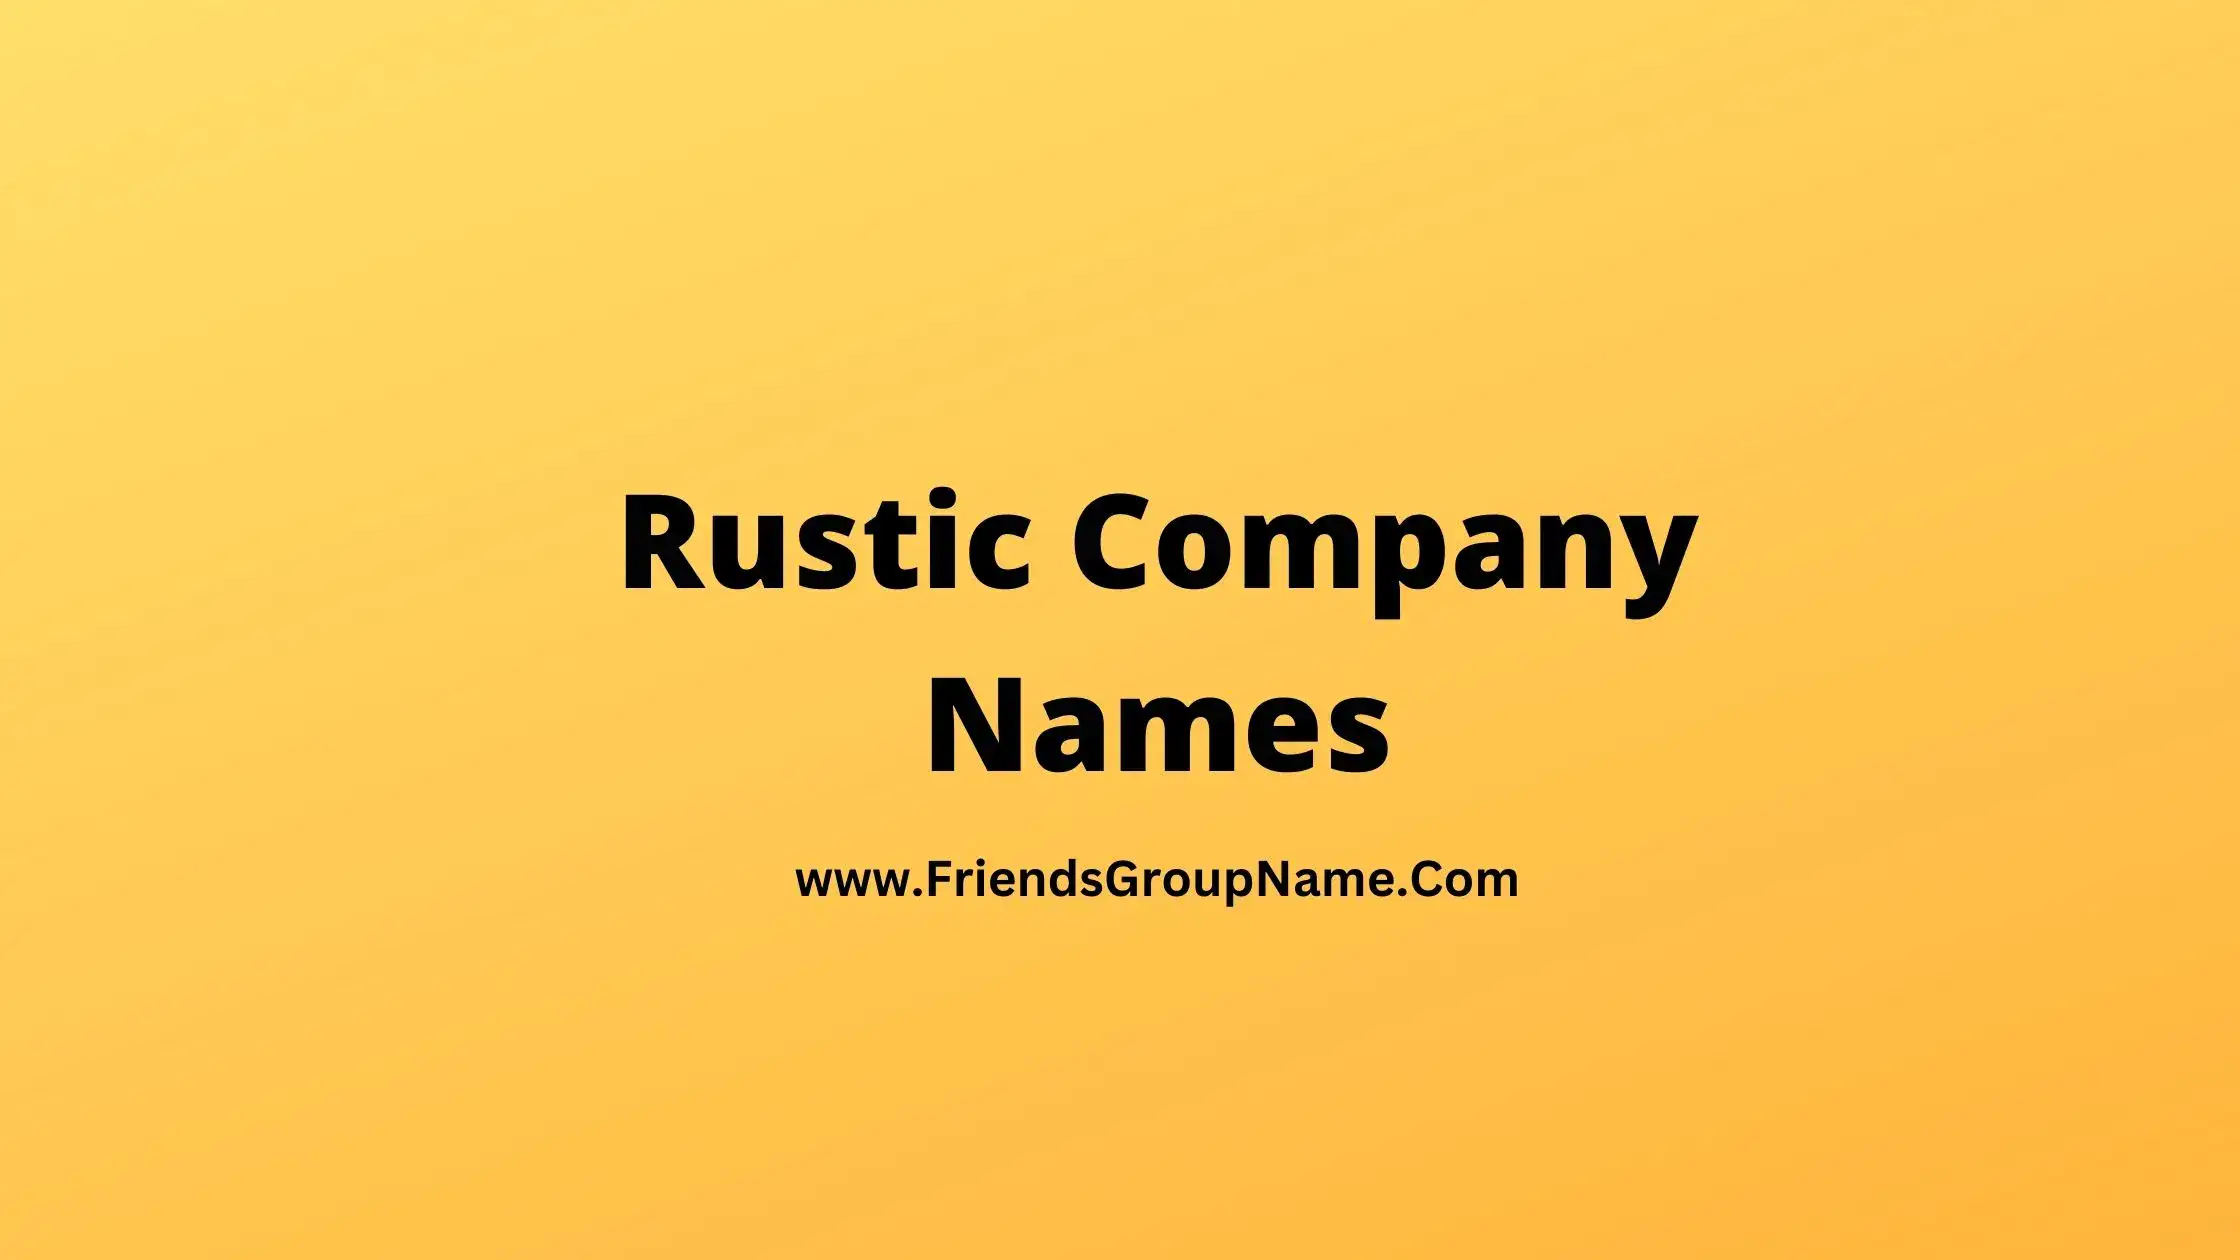 Rustic Company Names